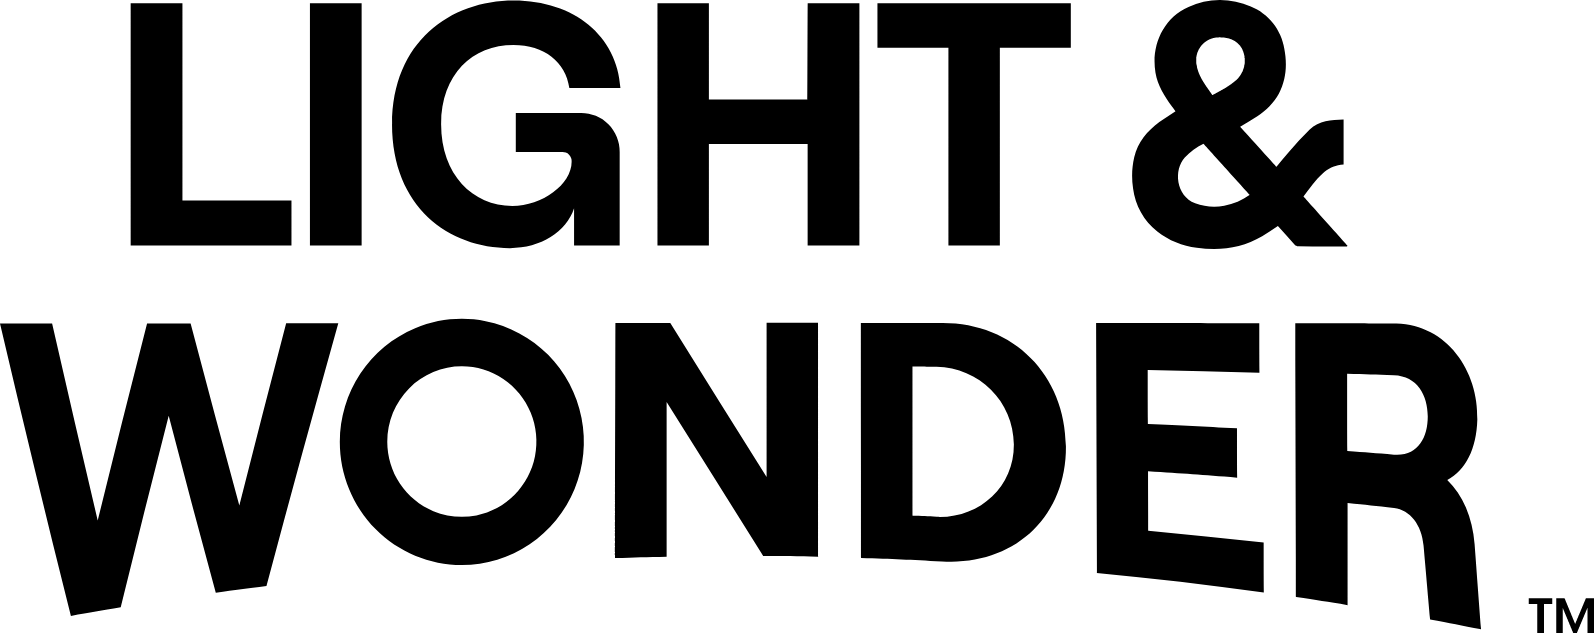 Light & Wonder logo large (transparent PNG)